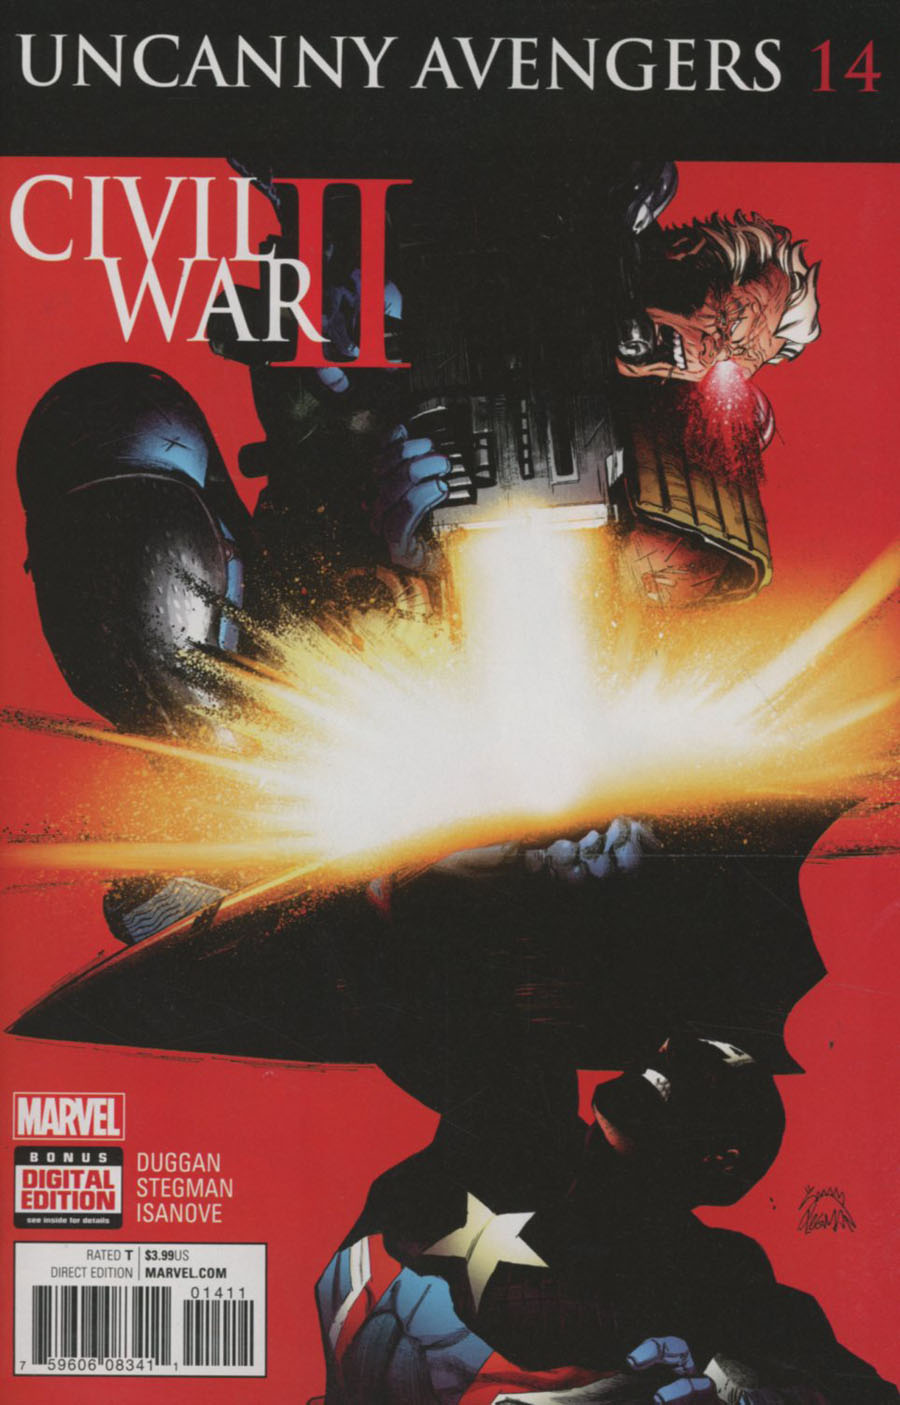 Uncanny Avengers Vol 3 #14 (Civil War II Tie-In)